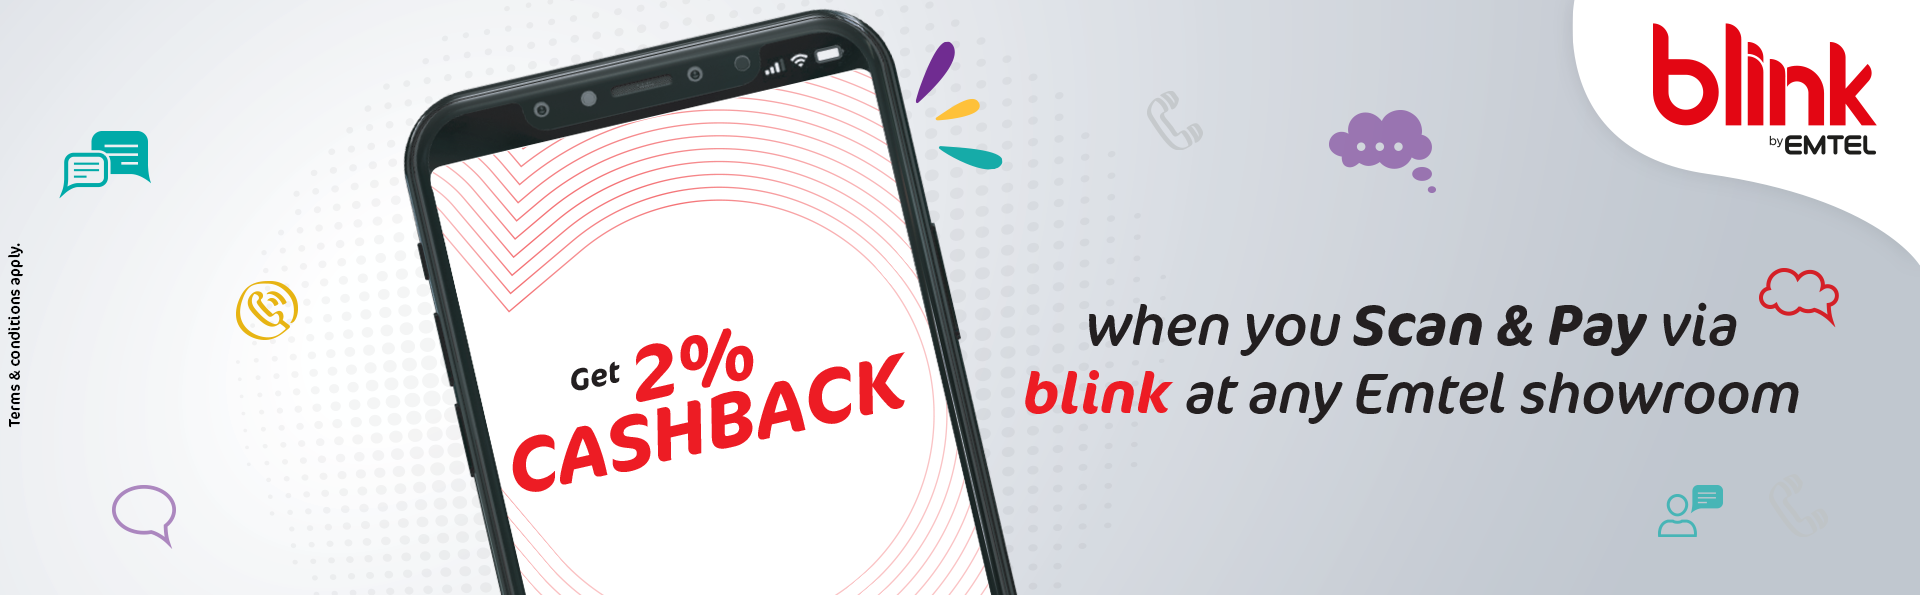 2 Percent cashback using blink 